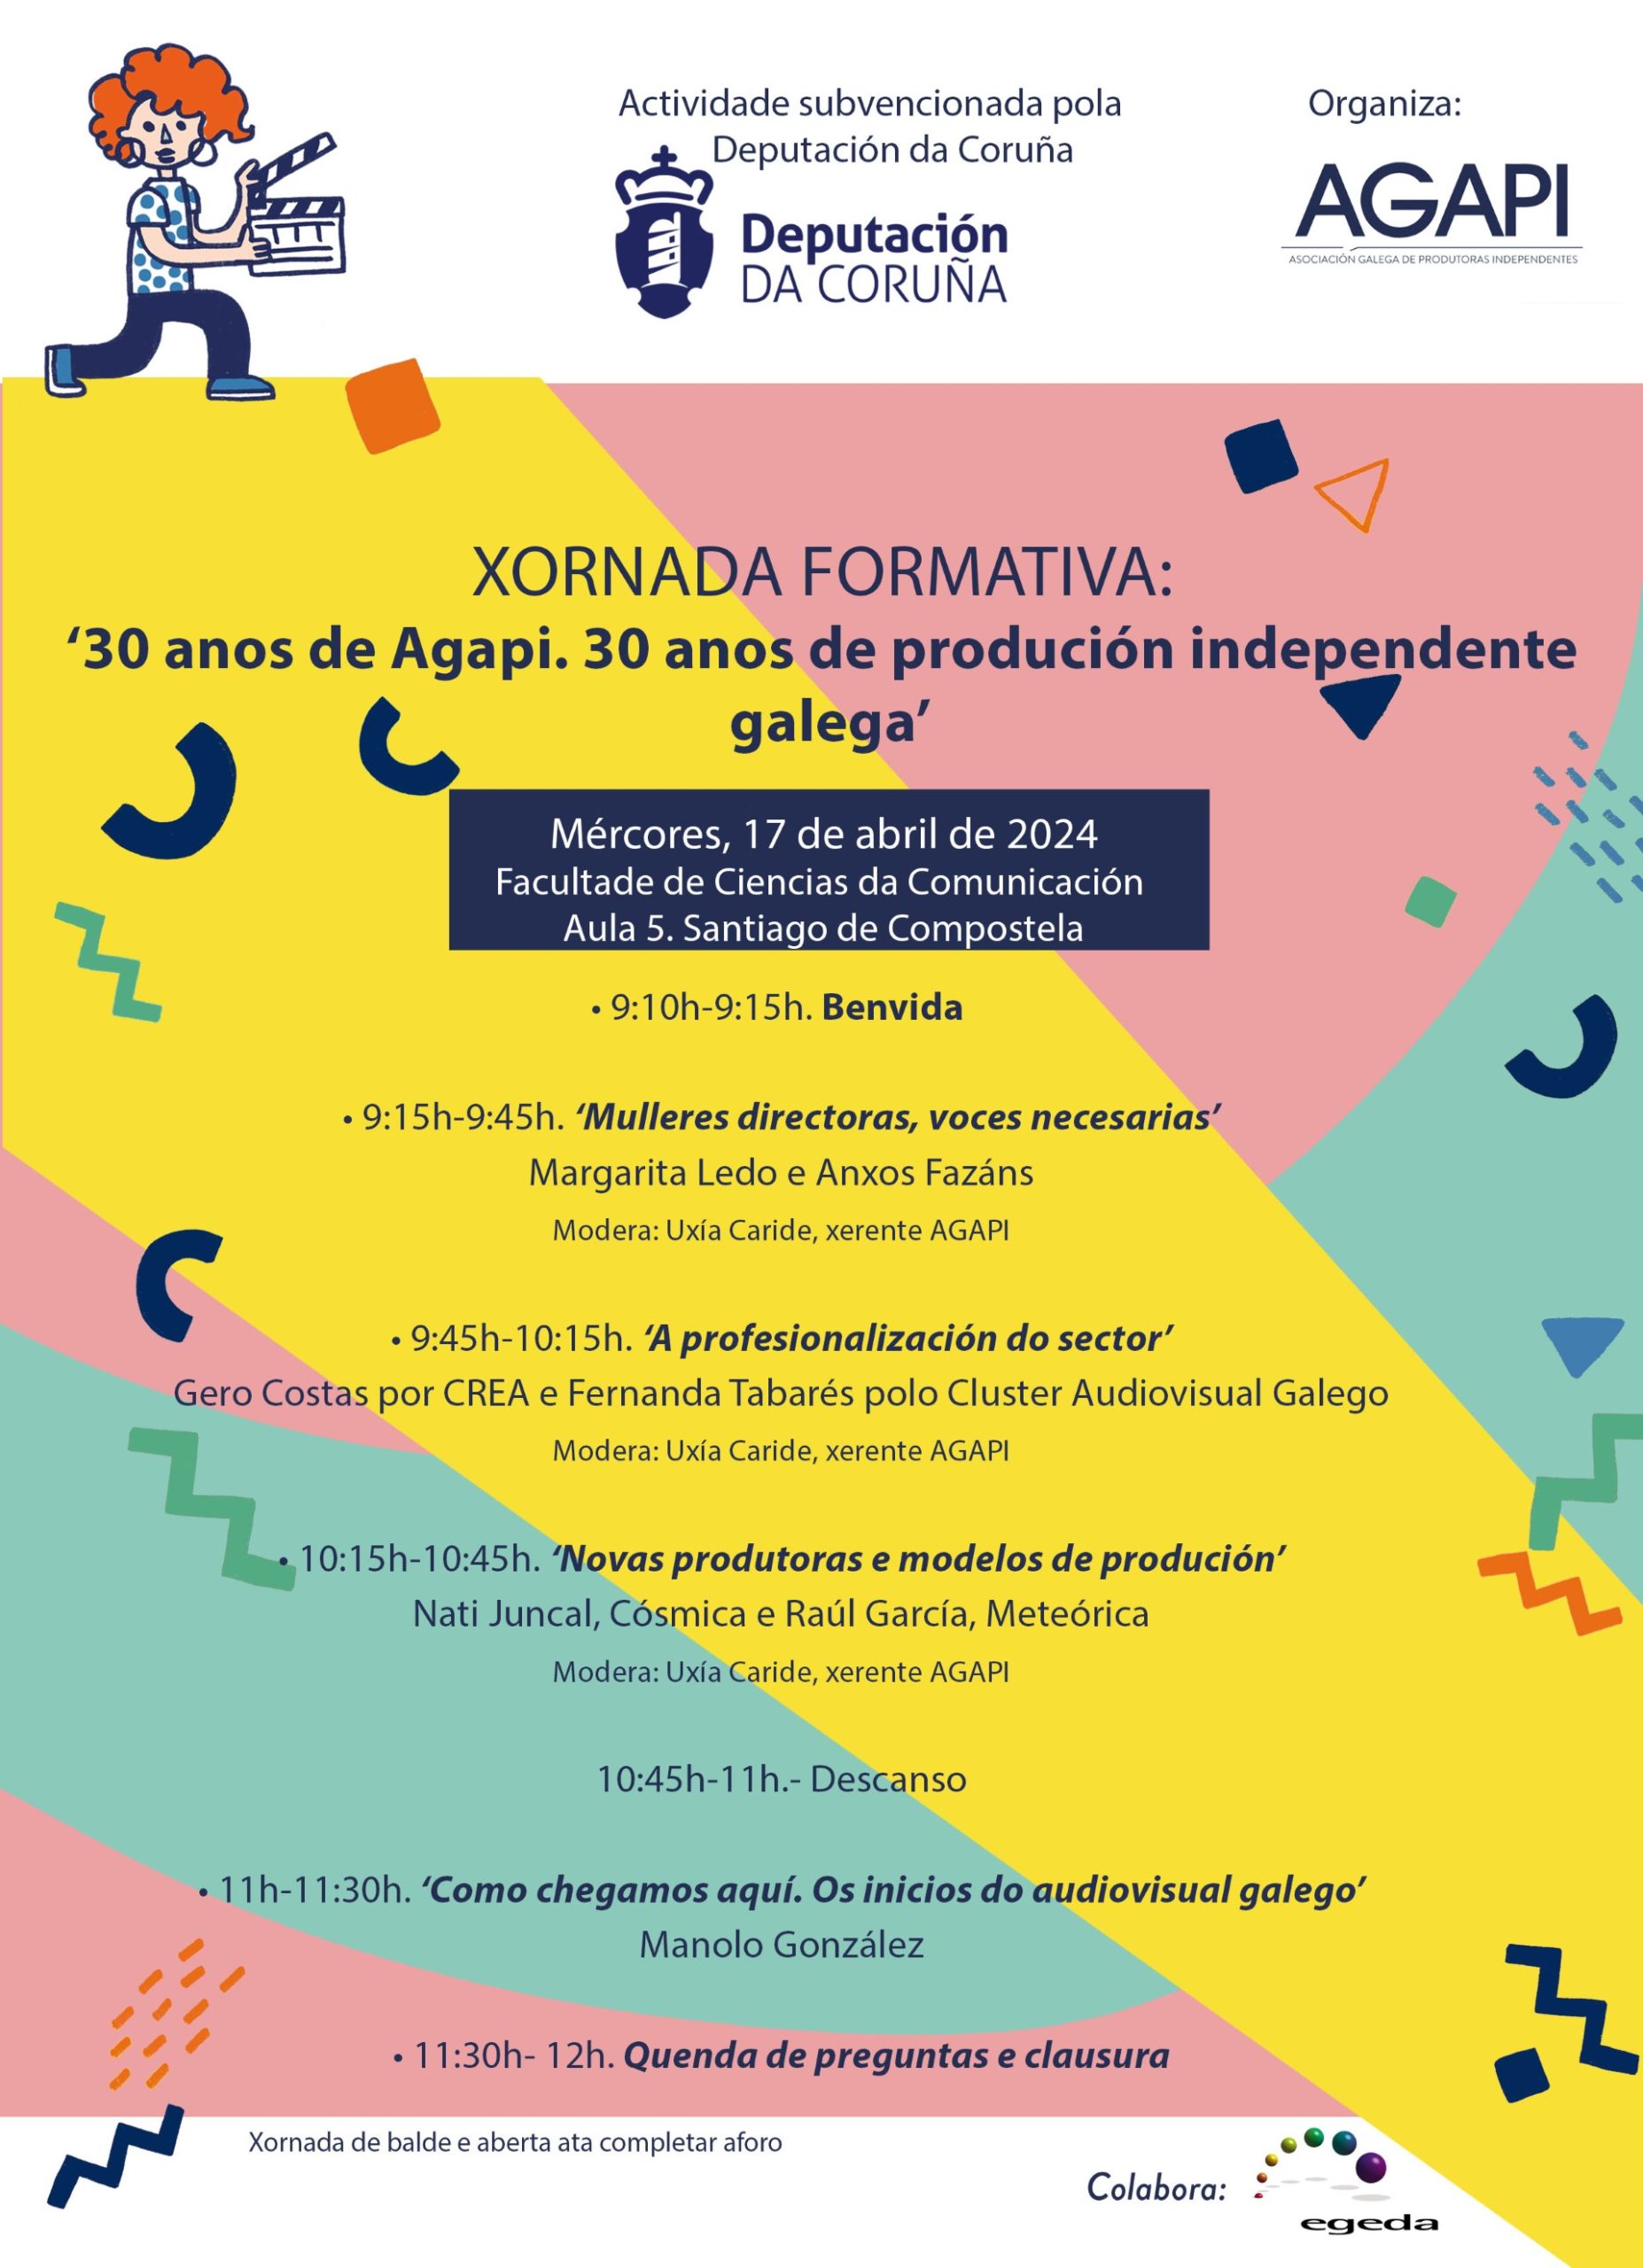 Formación nas tres universidades galegas para celebrar os 30 anos de Agapi